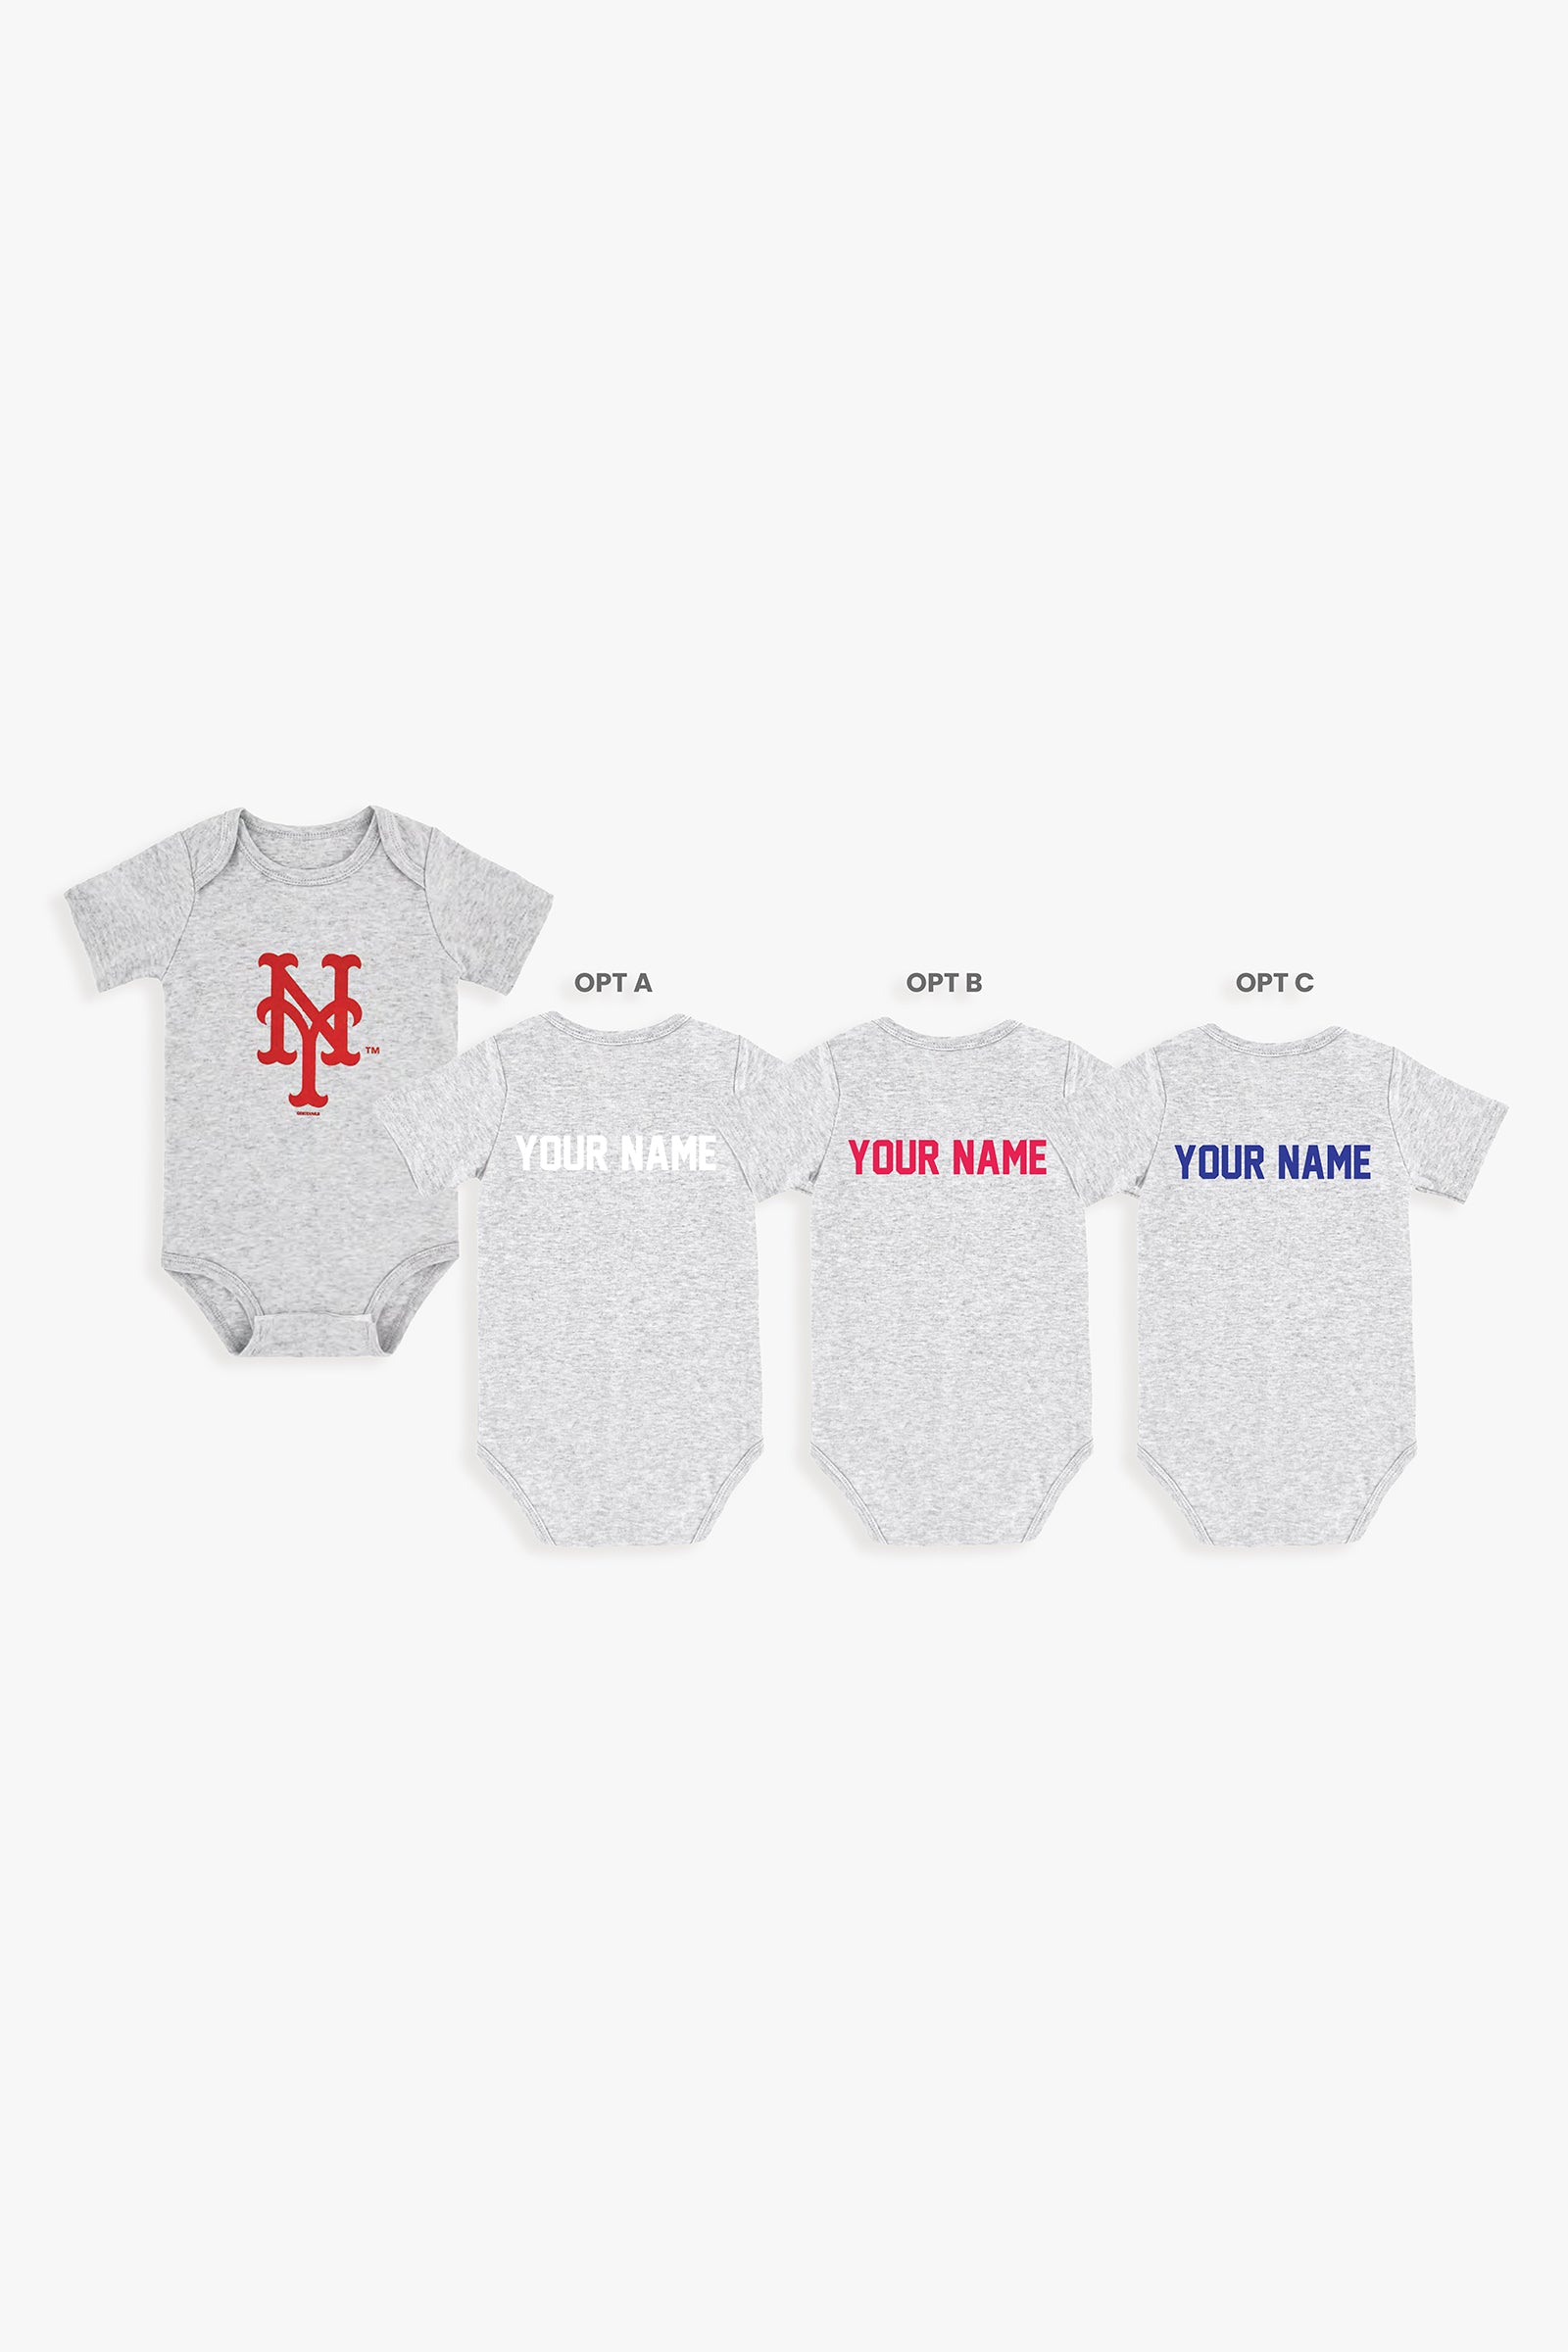 Customizable MLB Baby Onesie Bodysuit in Grey (0-3 Months)